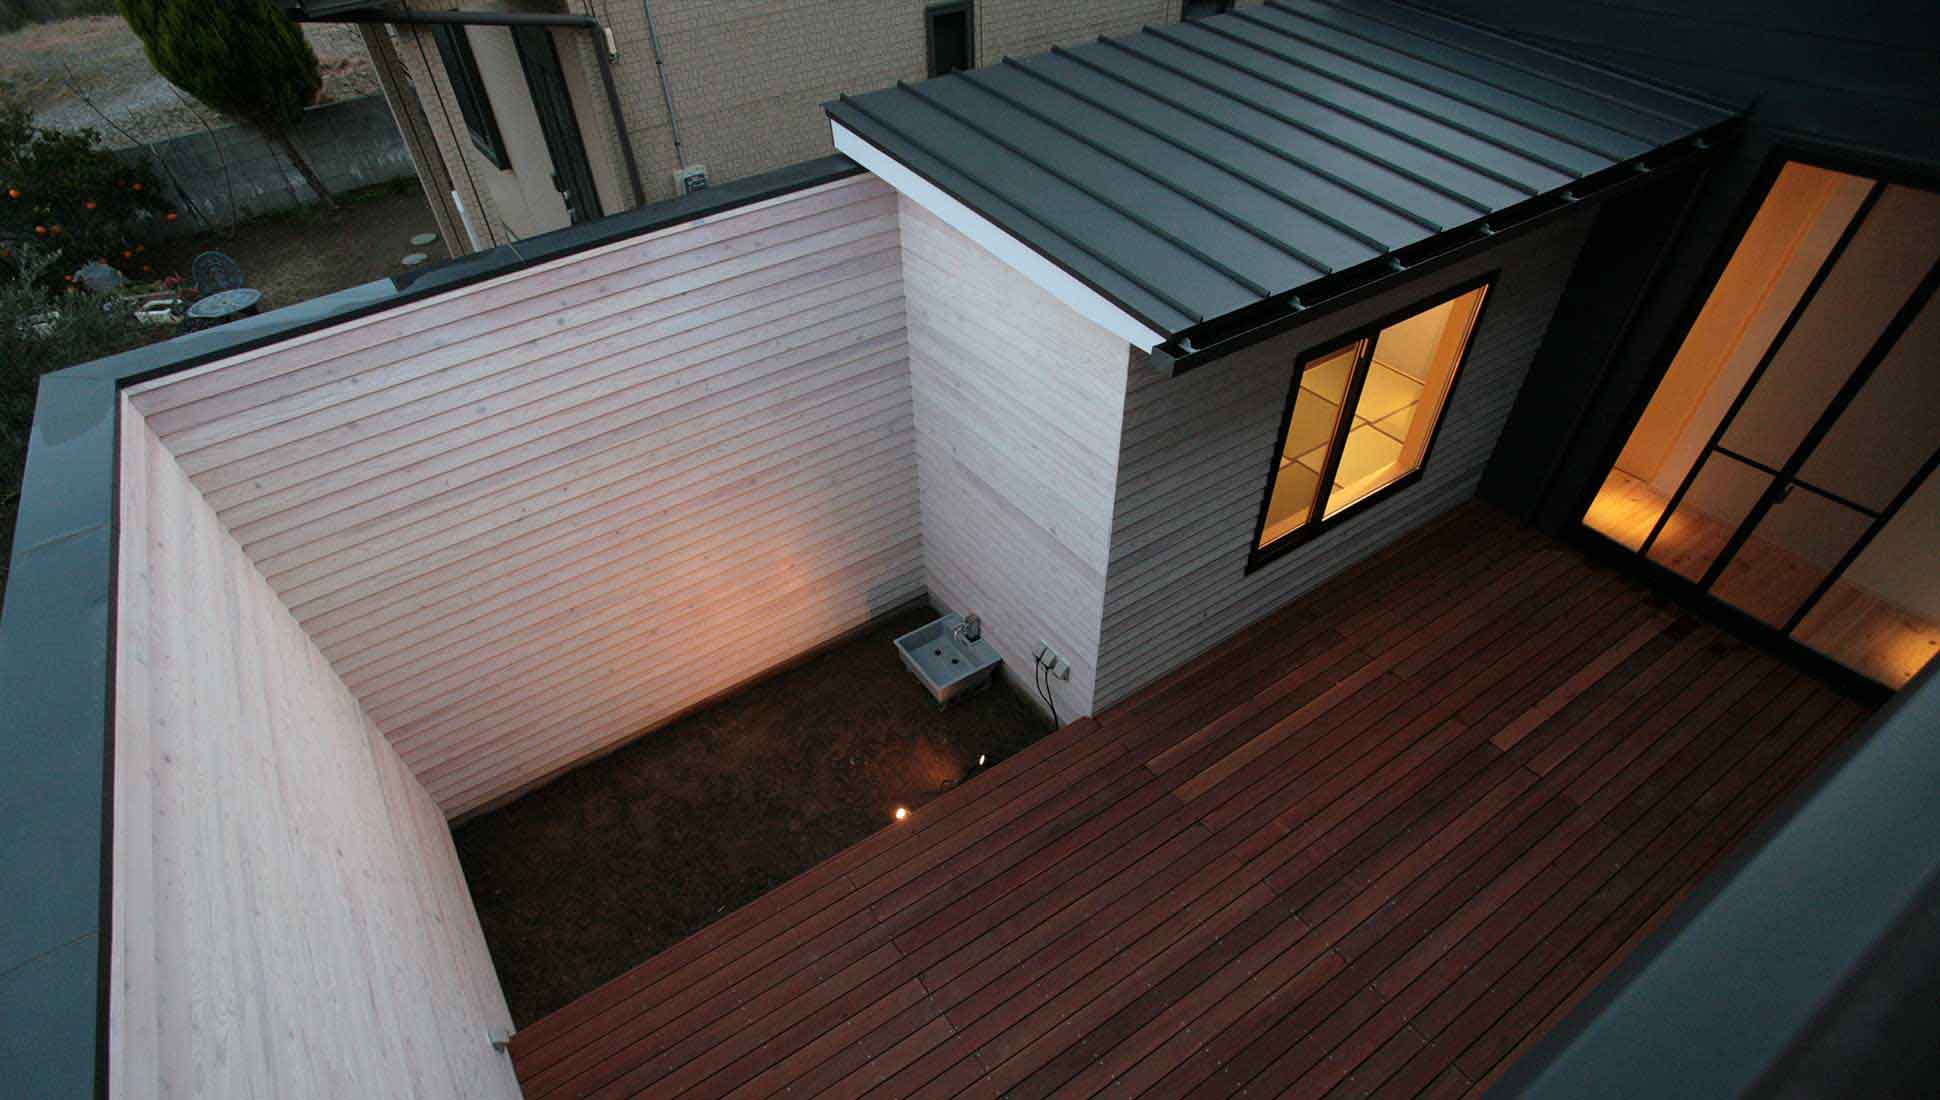 木更津の中庭のある家で用いた屋根材、縦ハゼ葺き、設計的なリアルな声。メリットは？デメリットは？